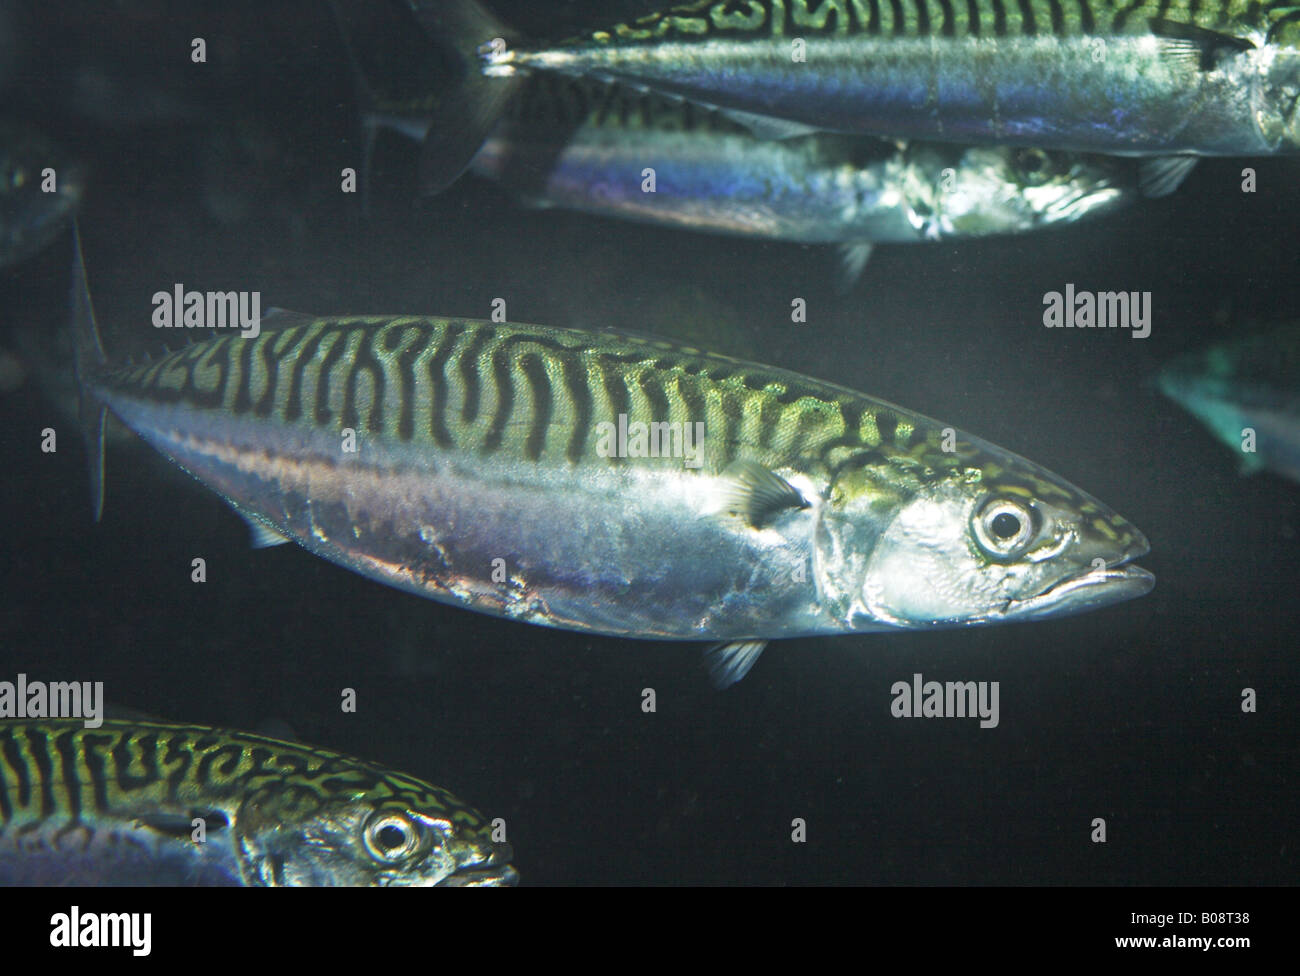 Atlantic mackerel, common mackerel (Scomber scombrus), school Stock Photo